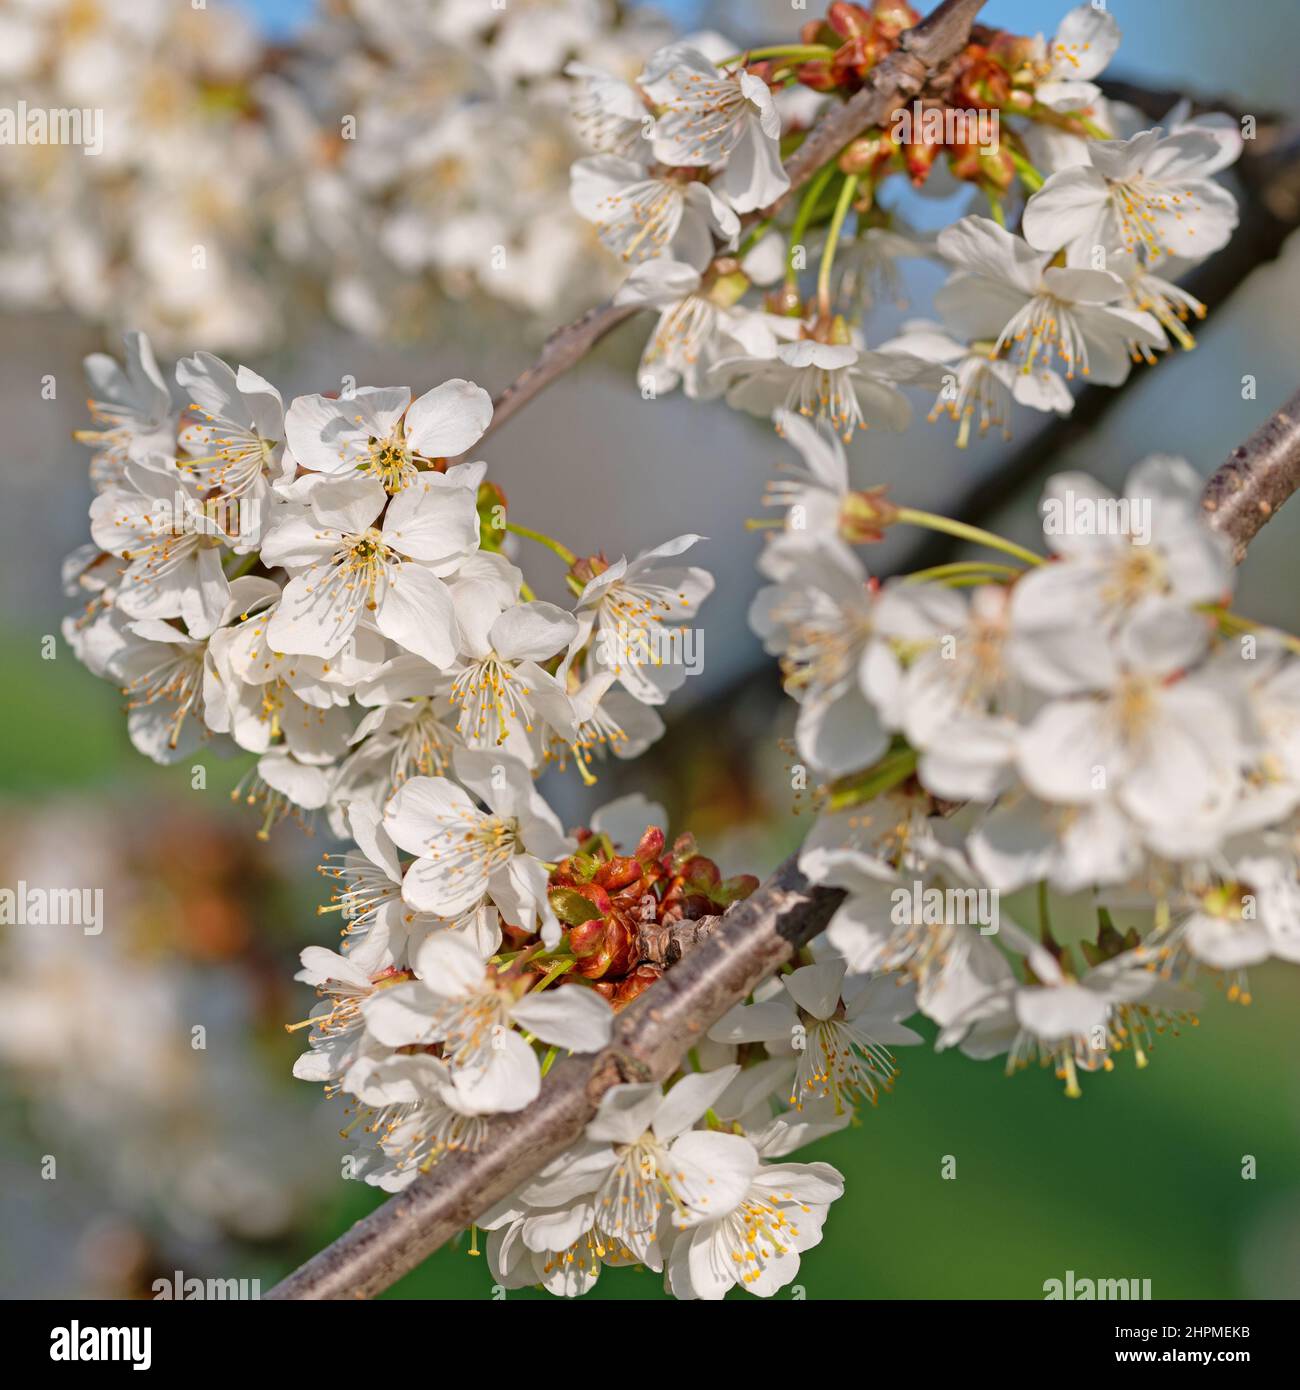 Cerisier à fleurs, Prunus avium, au printemps Banque D'Images